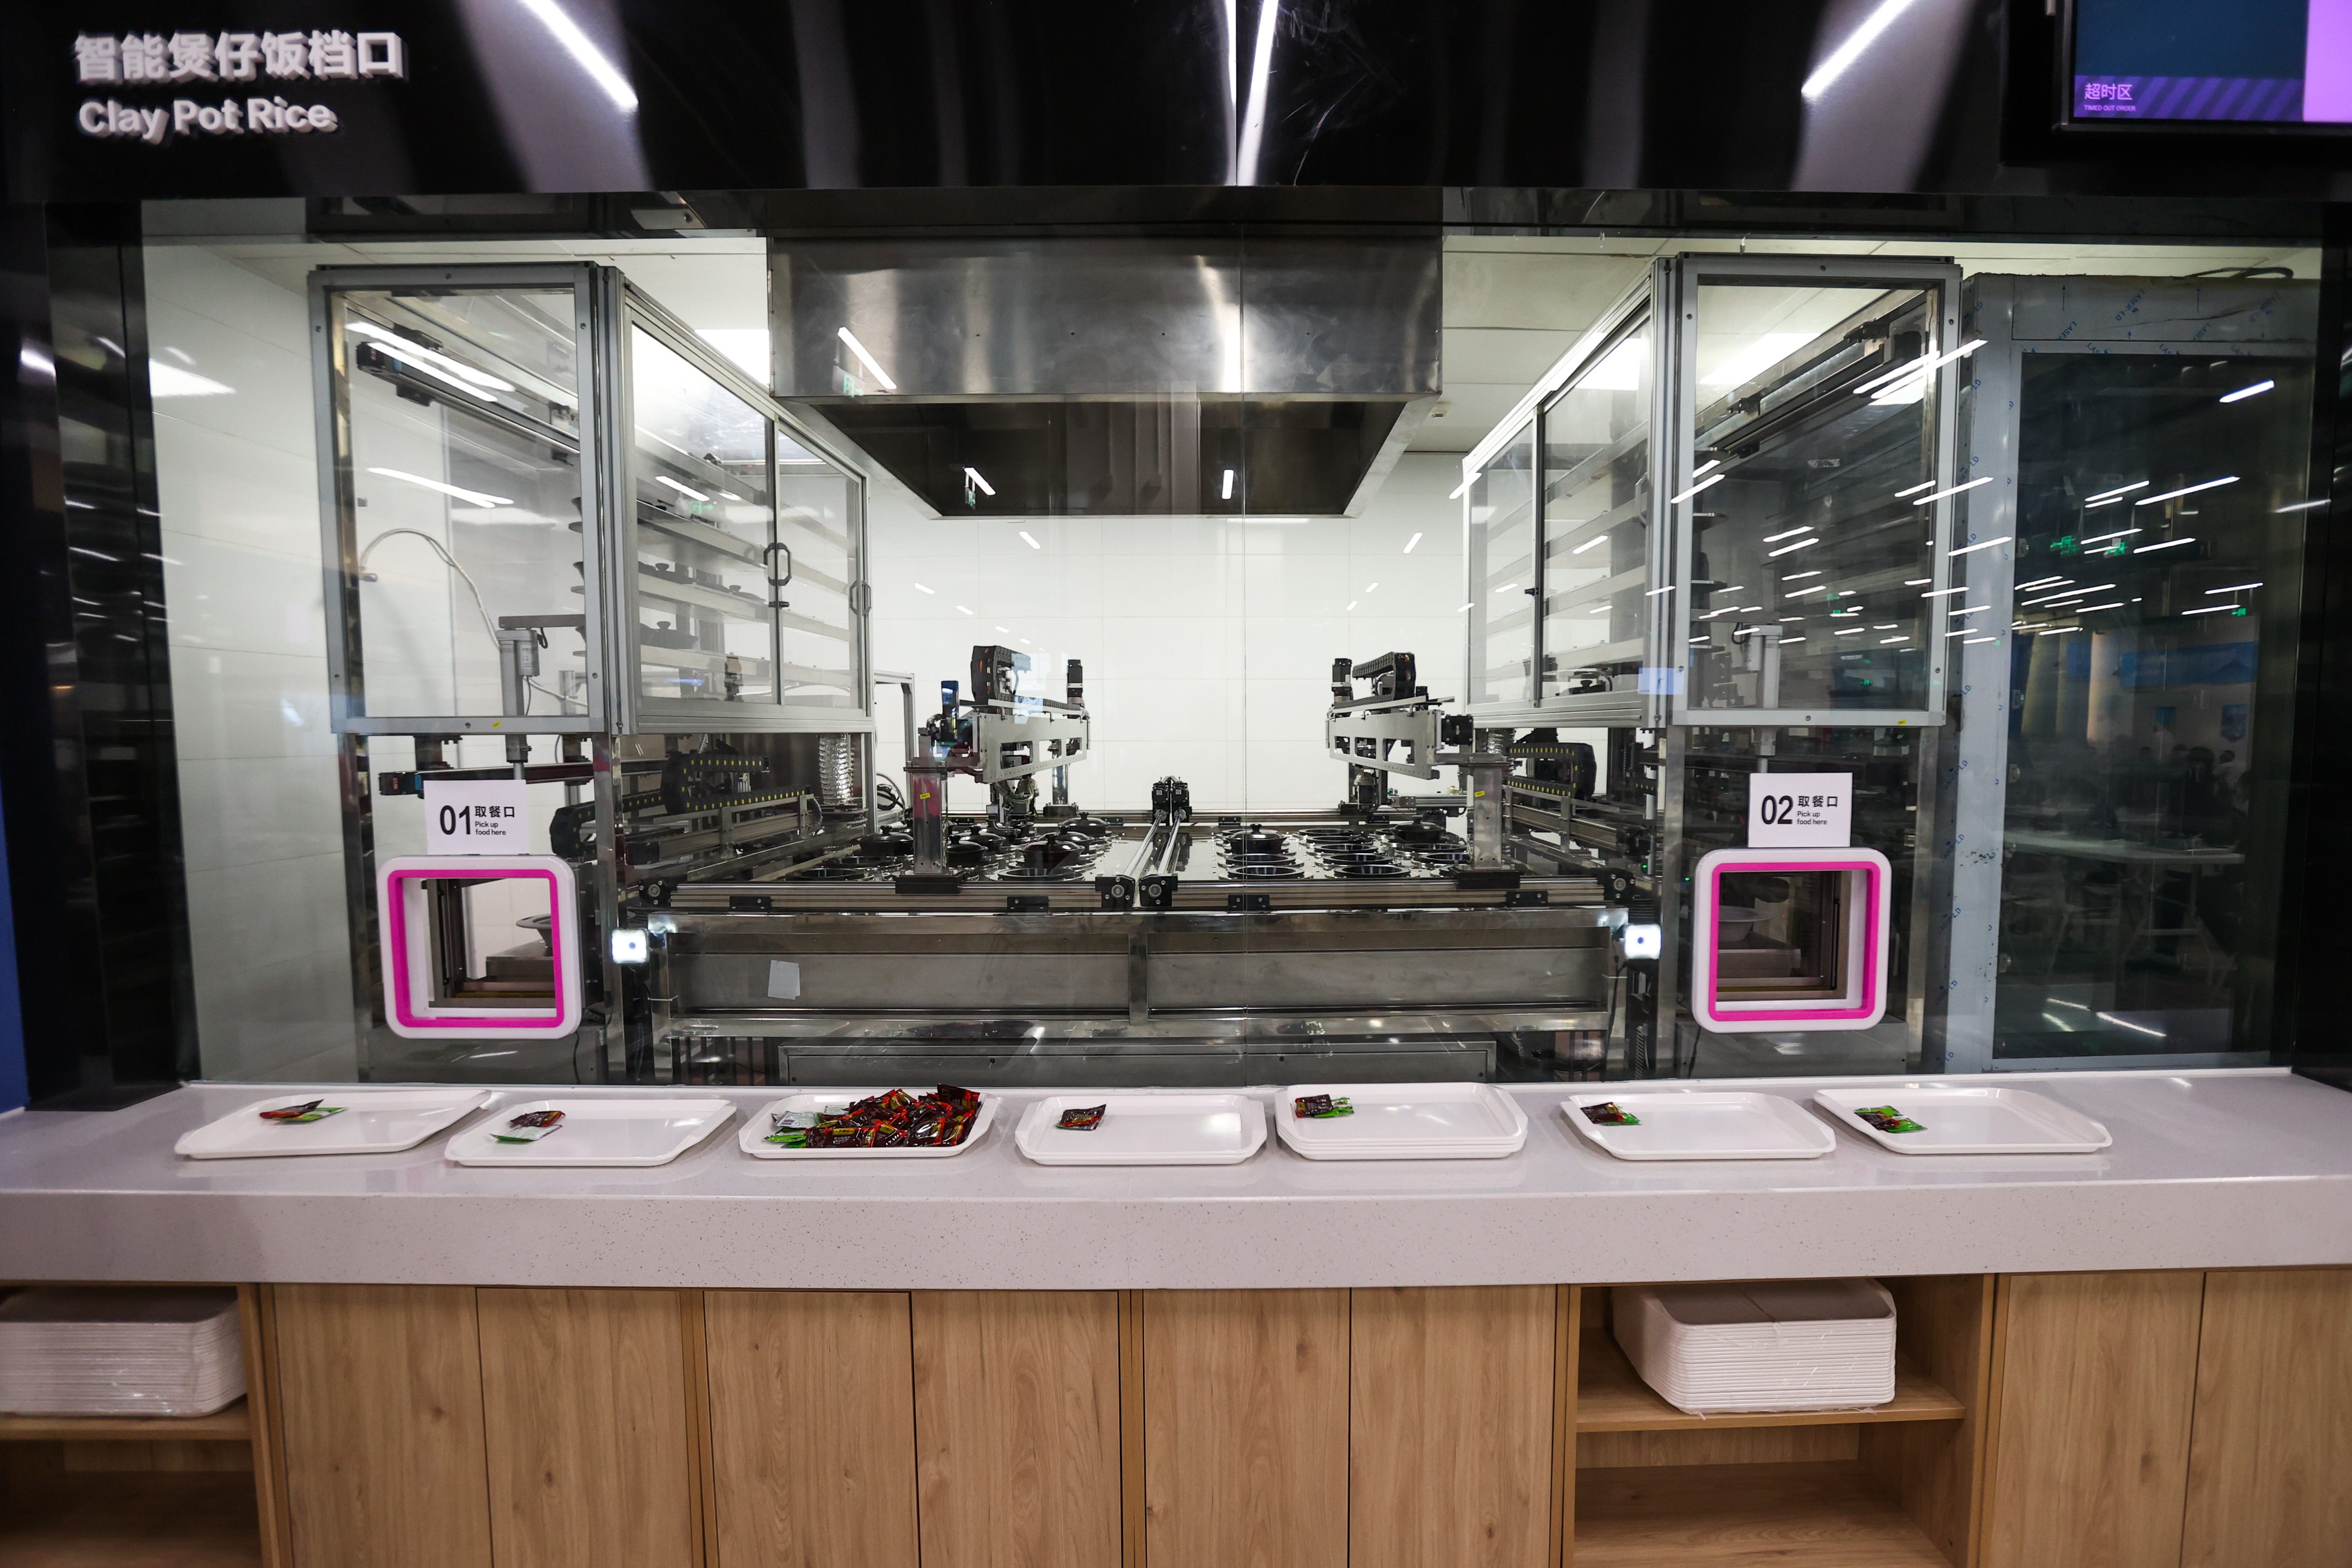 Die Gerichte im Restaurant werden von Robotern in einer automatisierten Küche zubereitet